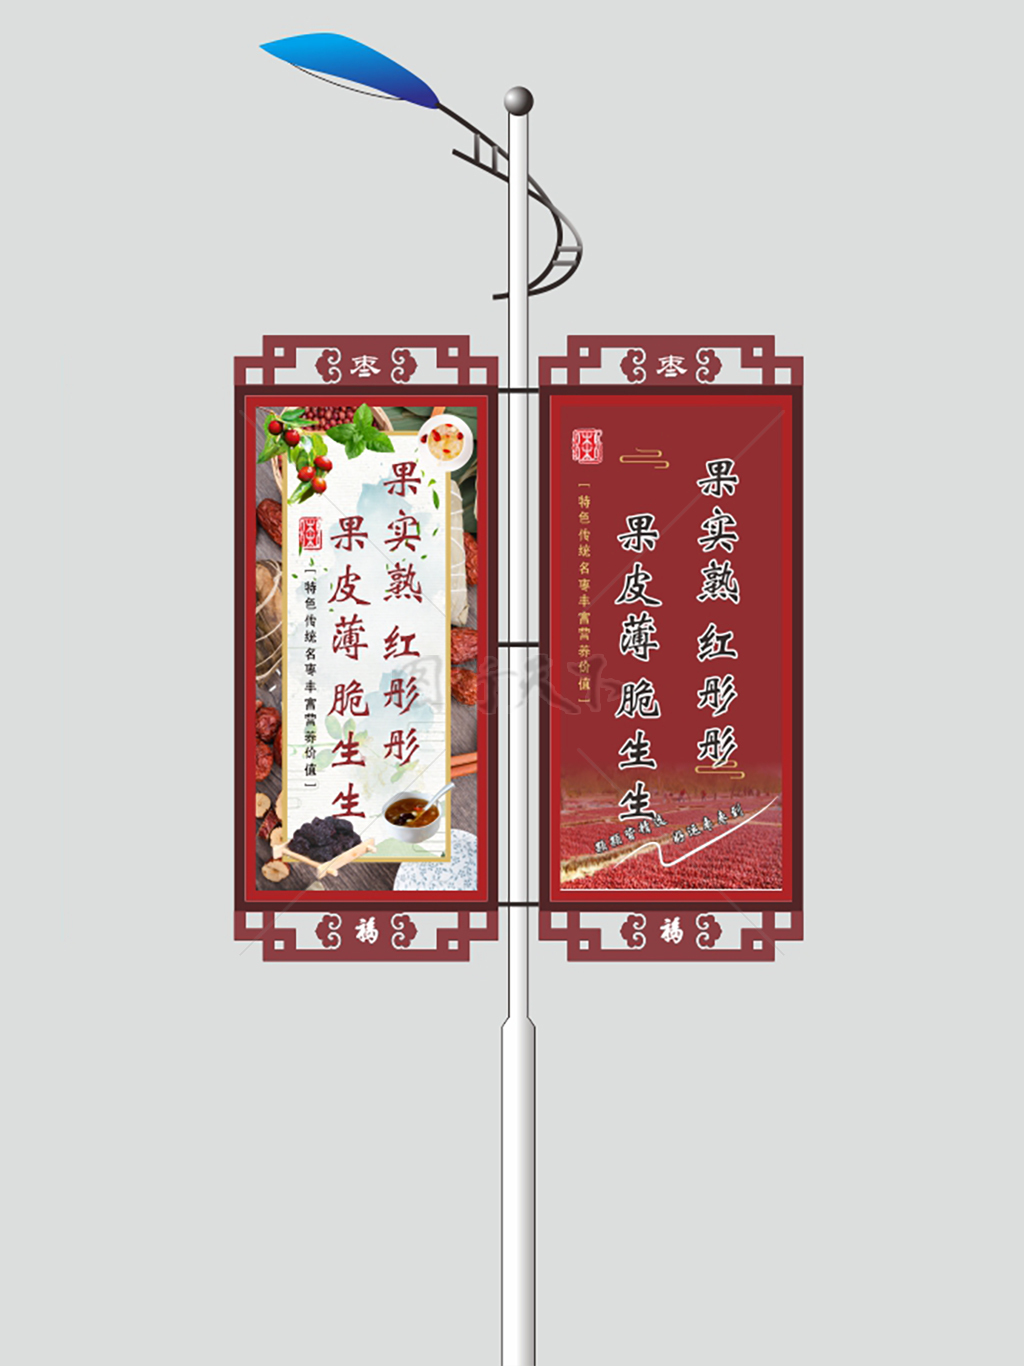 马路电线灯杆广告南蜜红枣促销海报异形灯箱旗帜展板